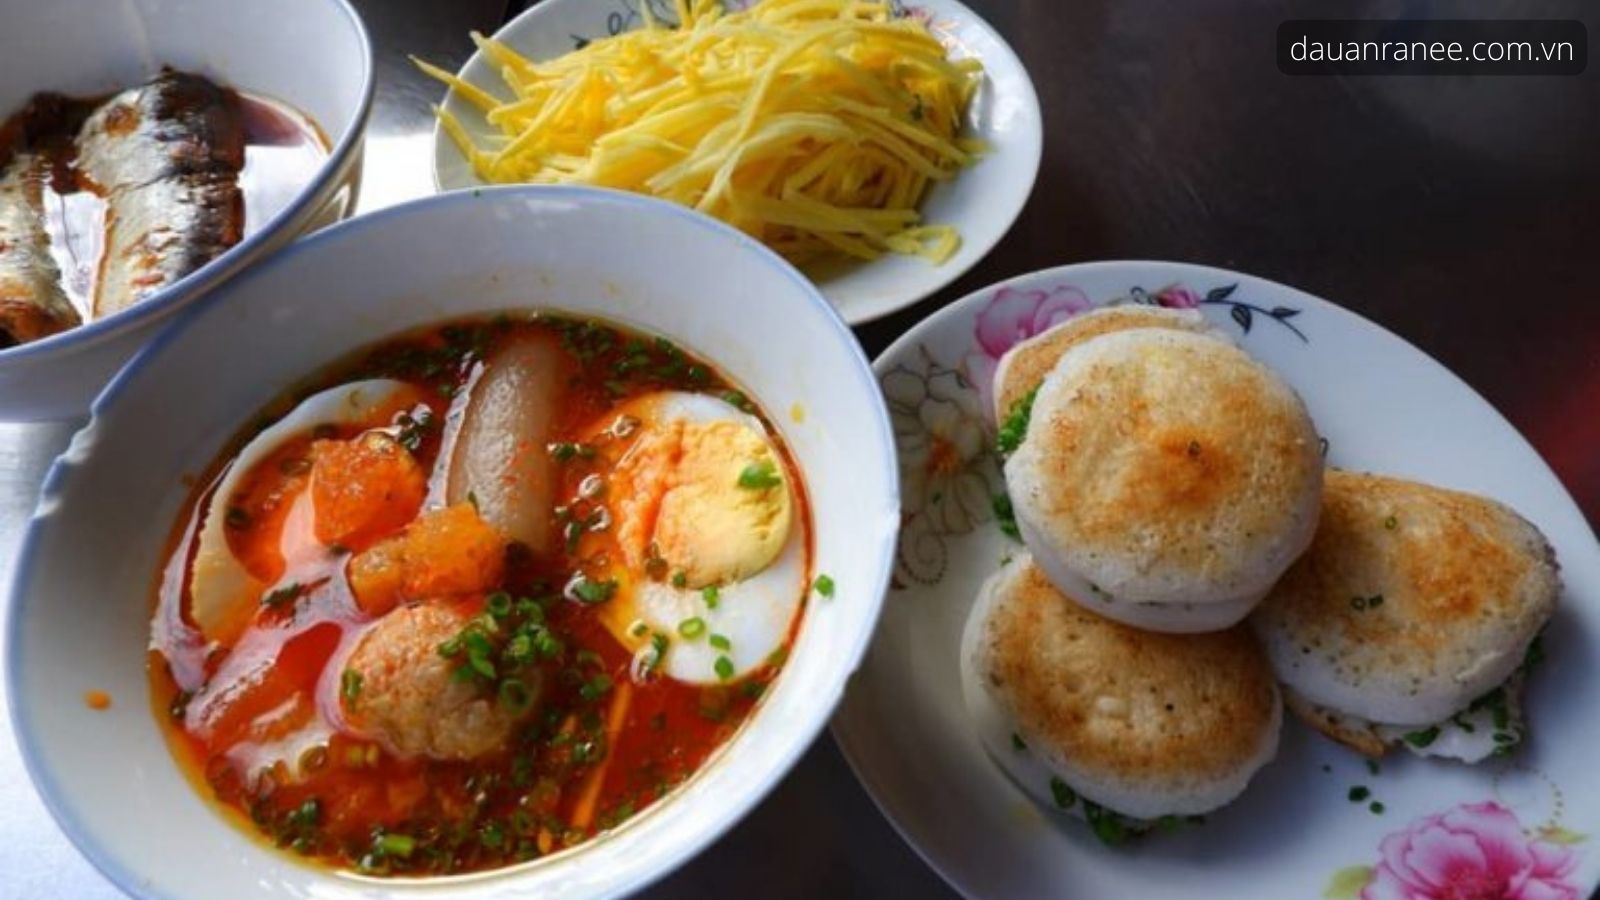 Bánh căn - Đặc sản Bình Thuận